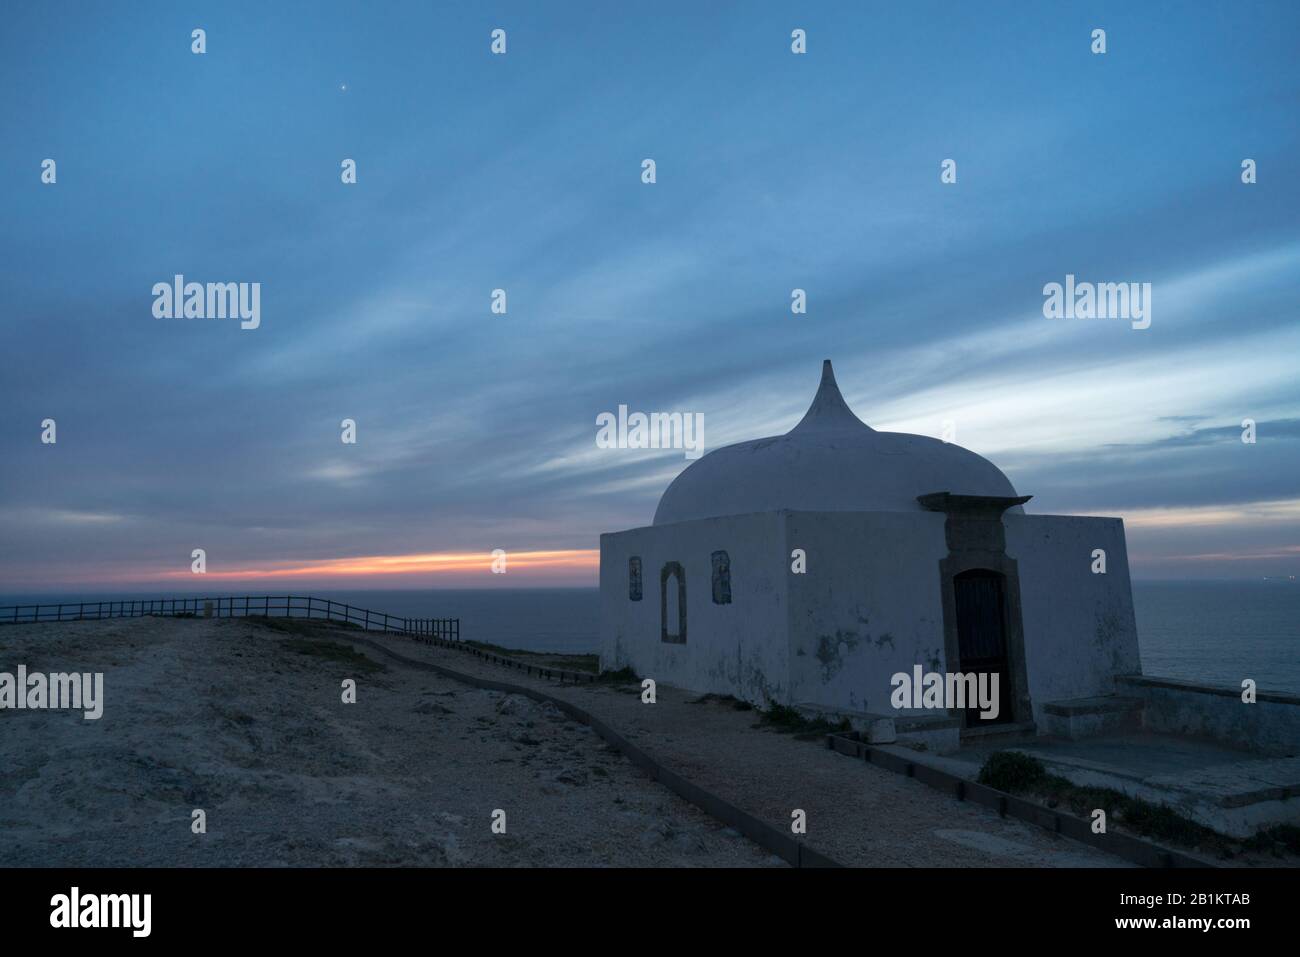 La cappella bianca di Ermida da Memória si trova ai margini di una scogliera vicino all'Oceano Atlantico al tramonto con un cielo nuvoloso e pantone classico blu Foto Stock